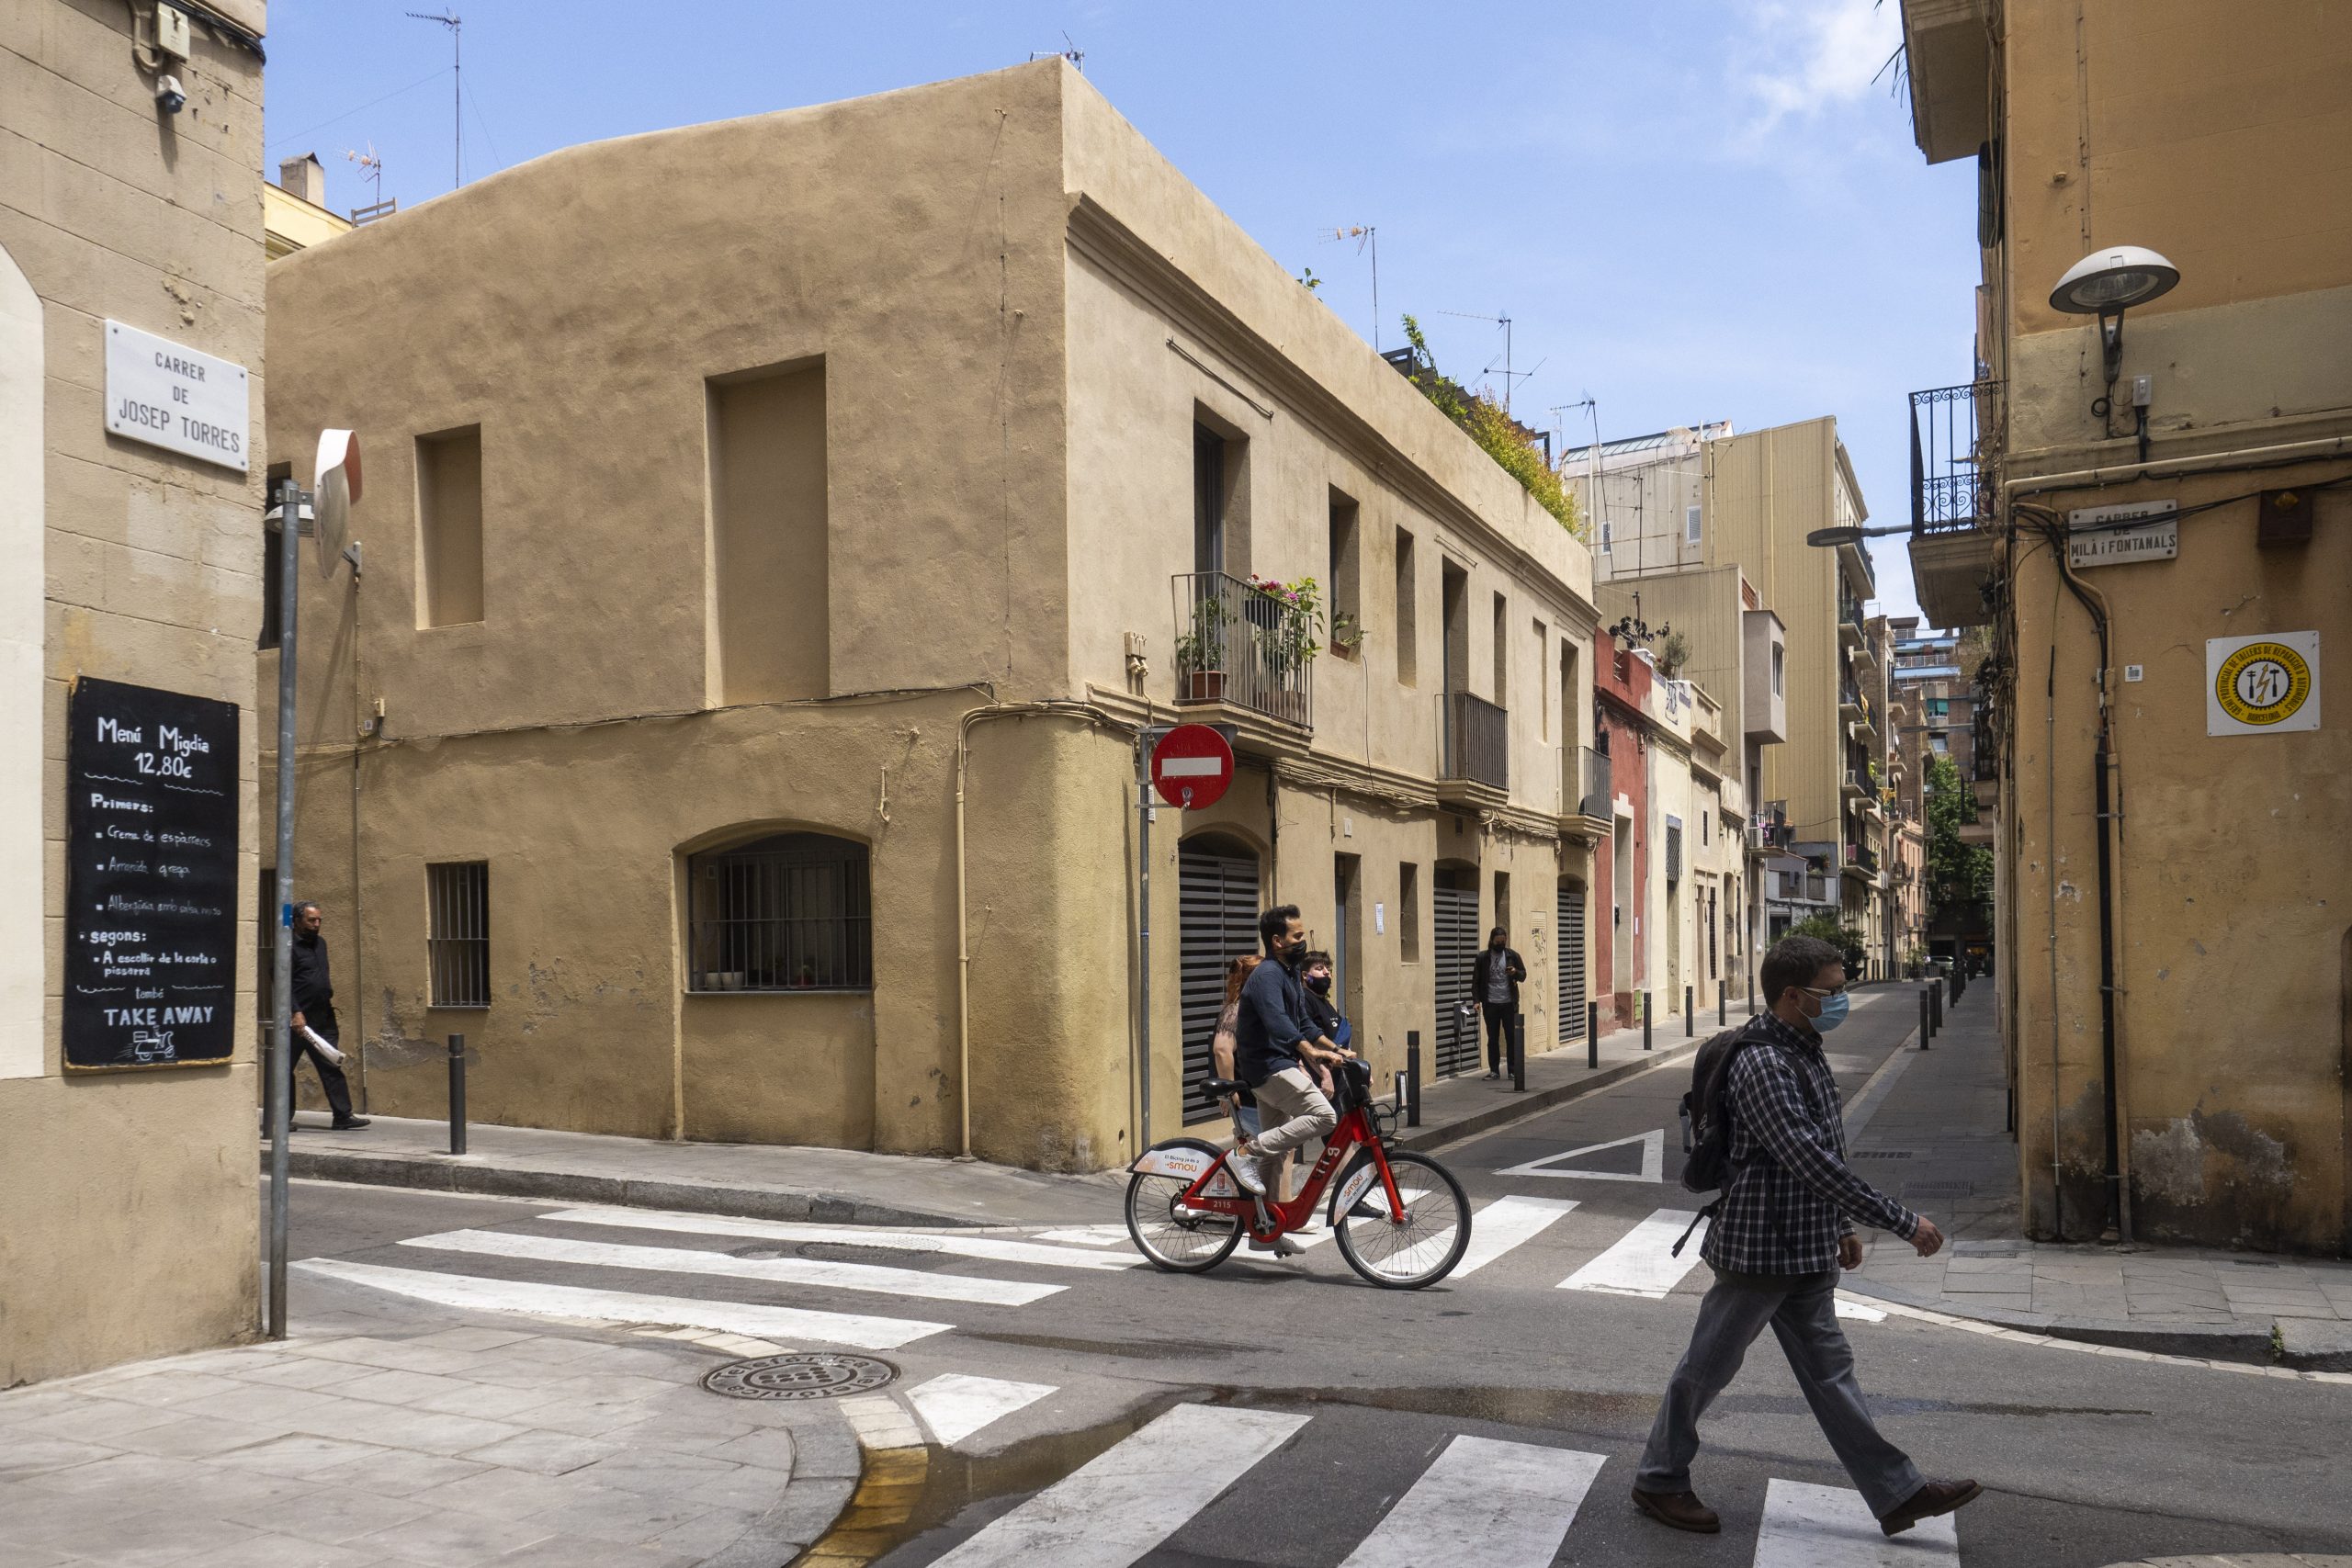 Expropiaciones a decenas de vecinos y negocios, lo que oculta el plan urbanístico de Gràcia